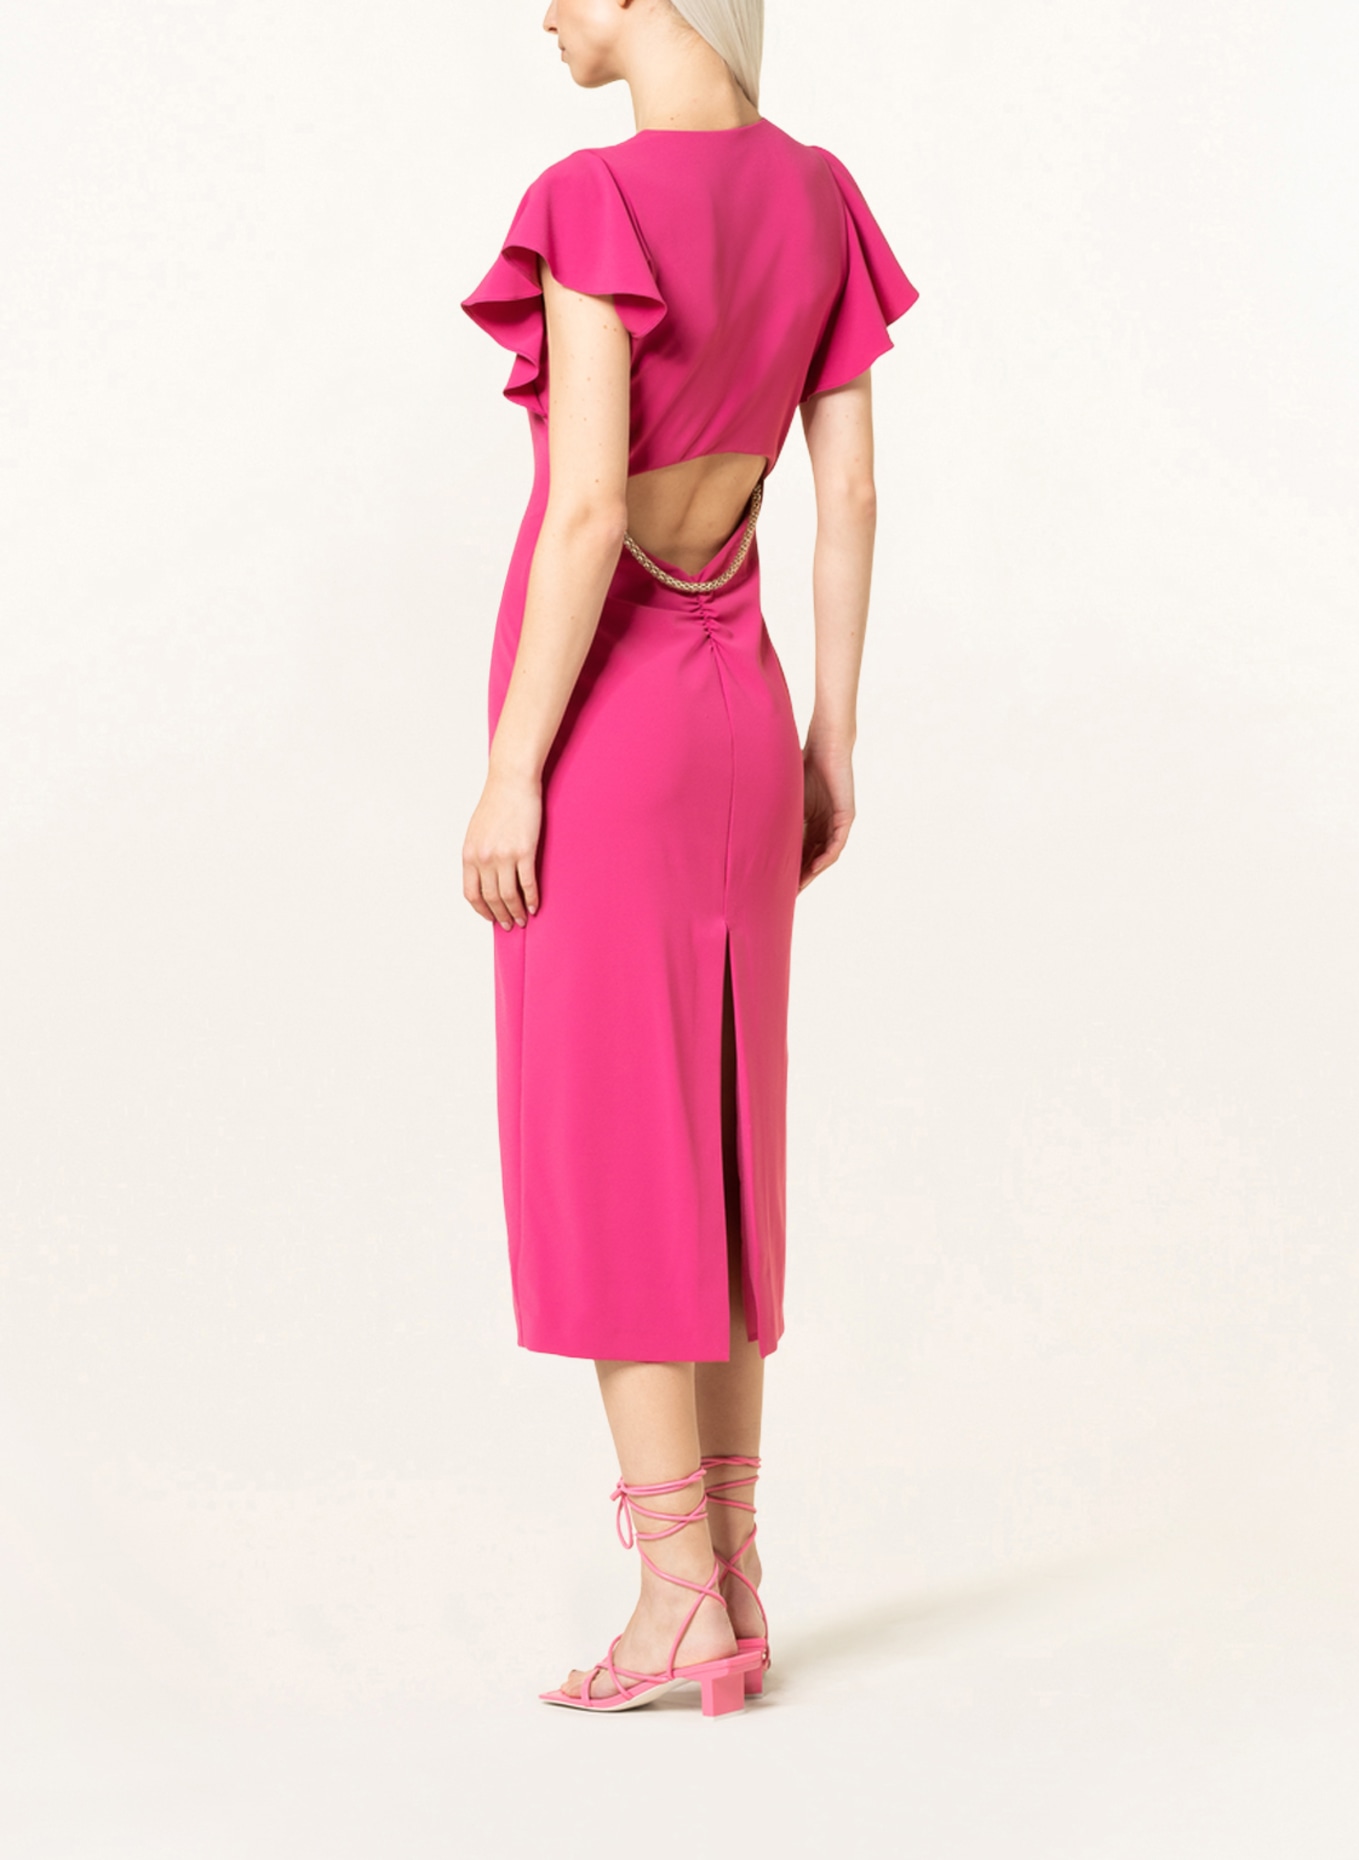 PATRIZIA PEPE Dress with cut-out, Color: FUCHSIA (Image 3)